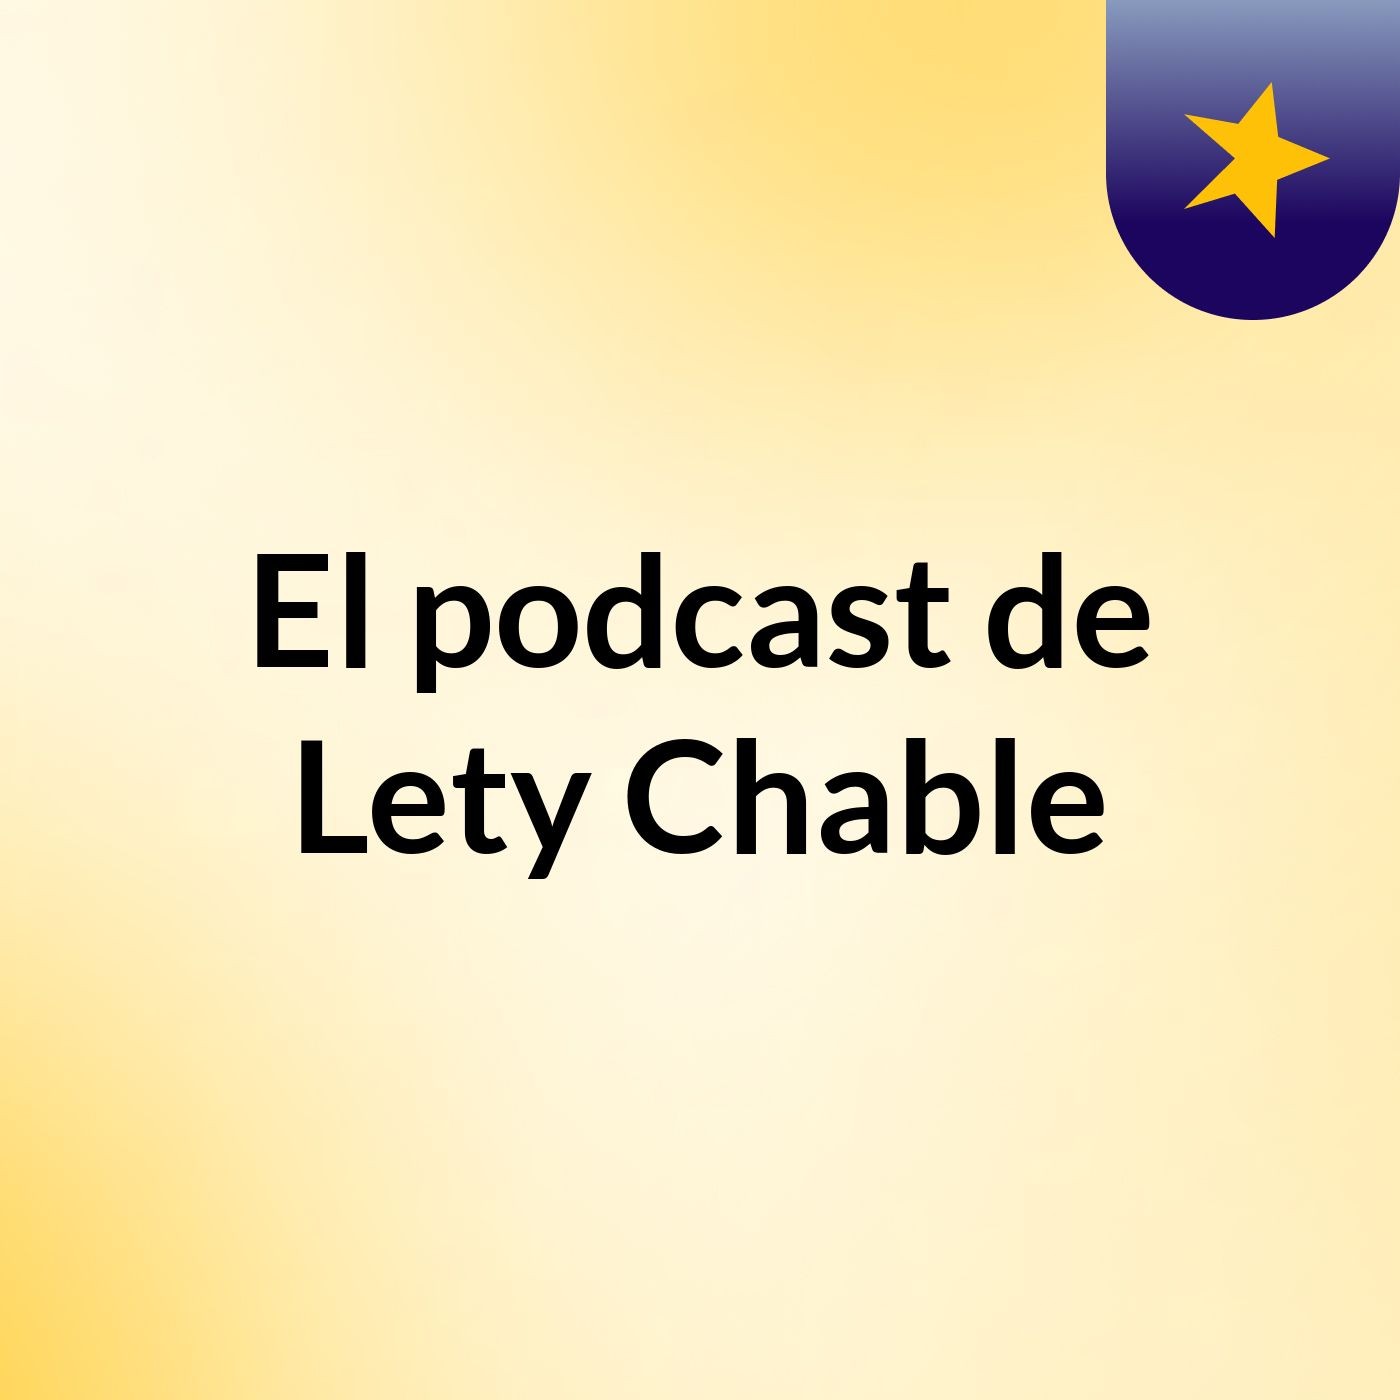 Estudio Biblico En Vivo - El podcast de Lety Chable